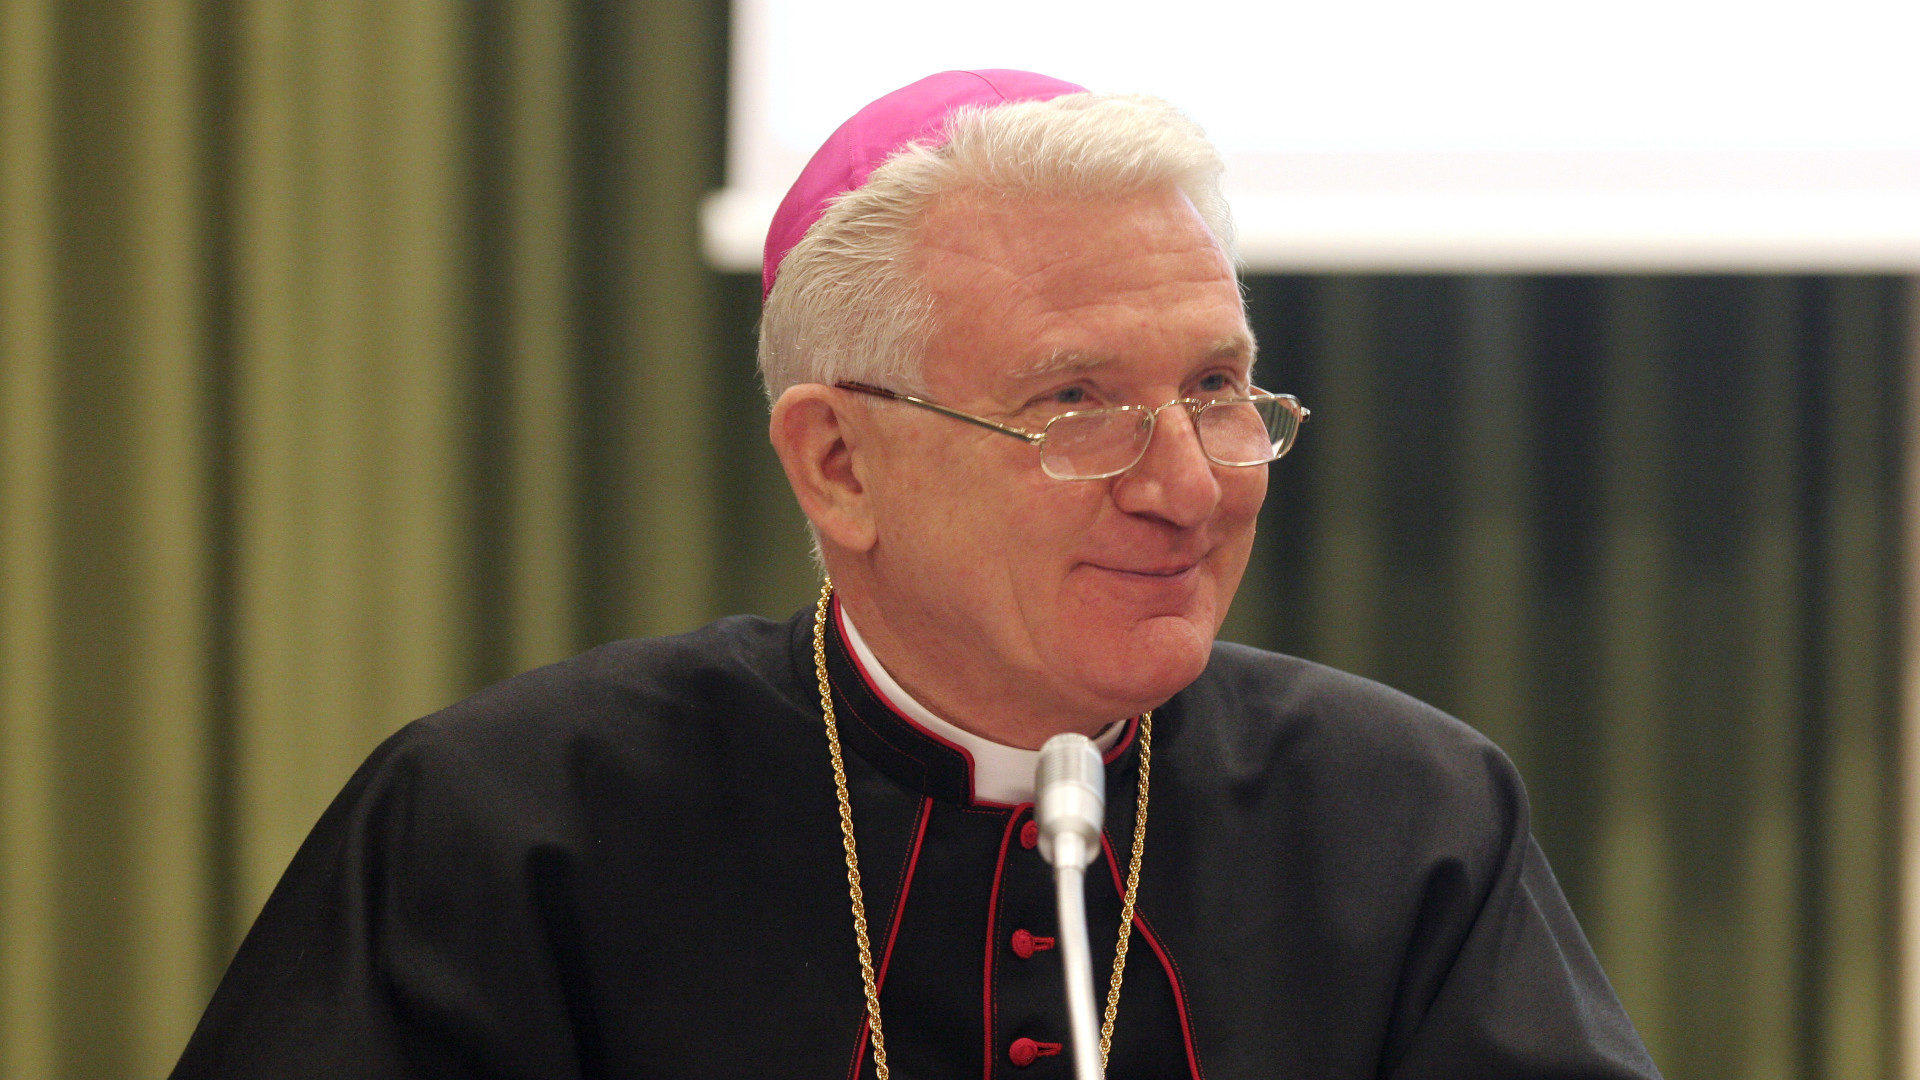 Bischof Josef Clemens, bis 2016 Sekretär des Päpstlichen Rates für die Laien.